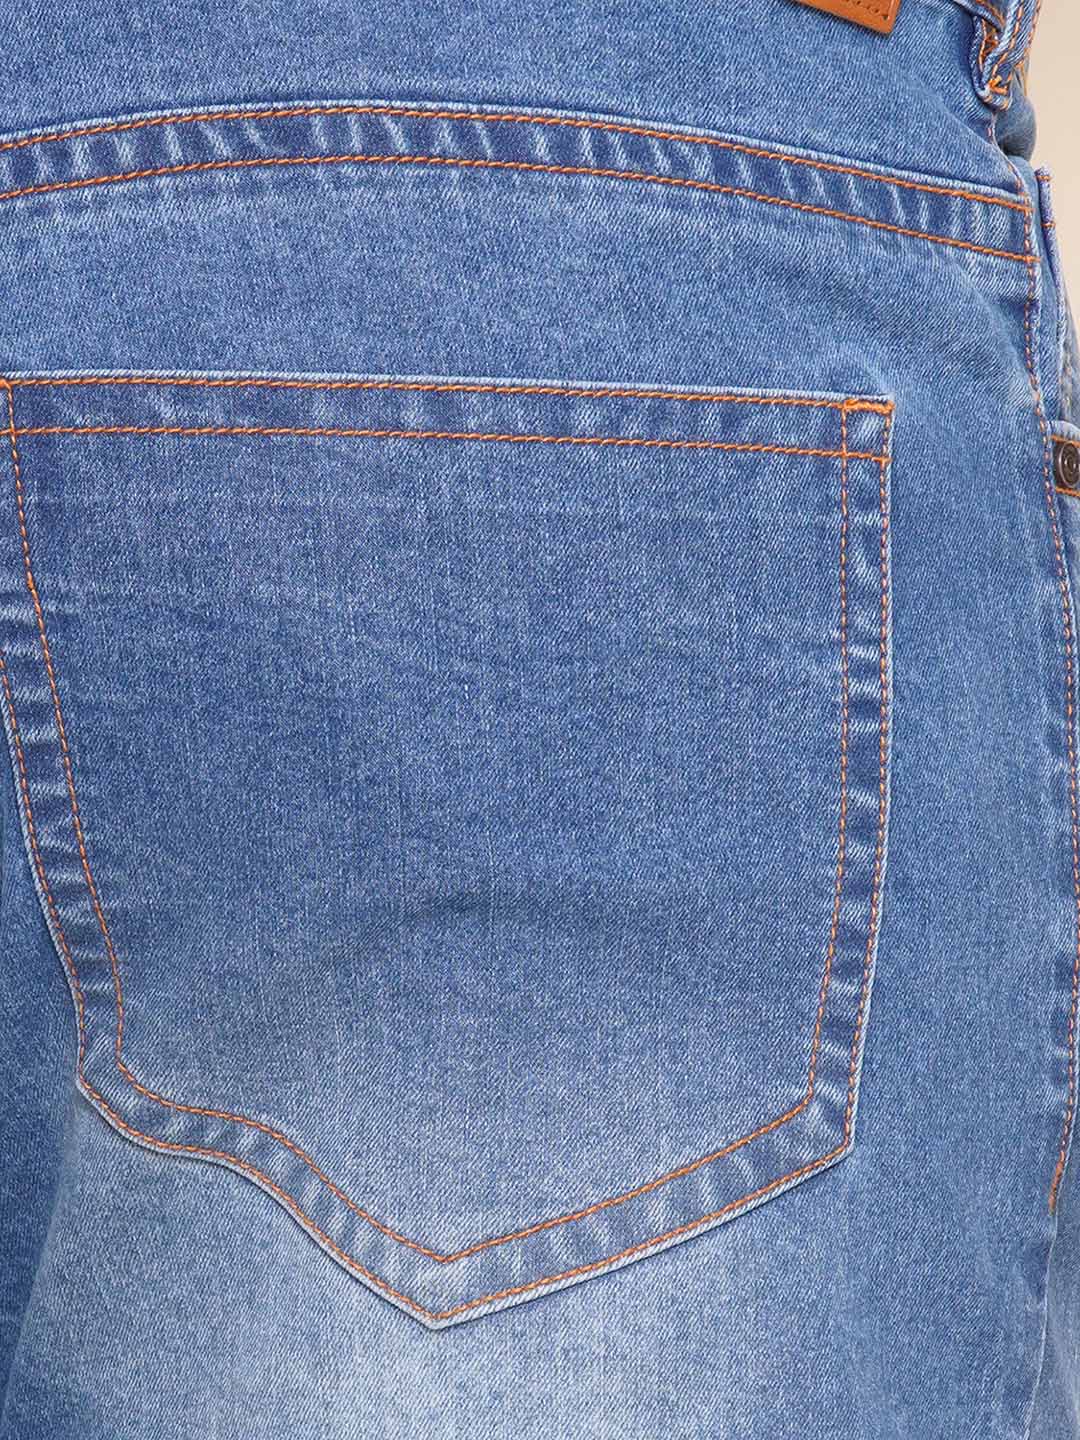 bottomwear/jeans/EJPJ25100/ejpj25100-2.jpg